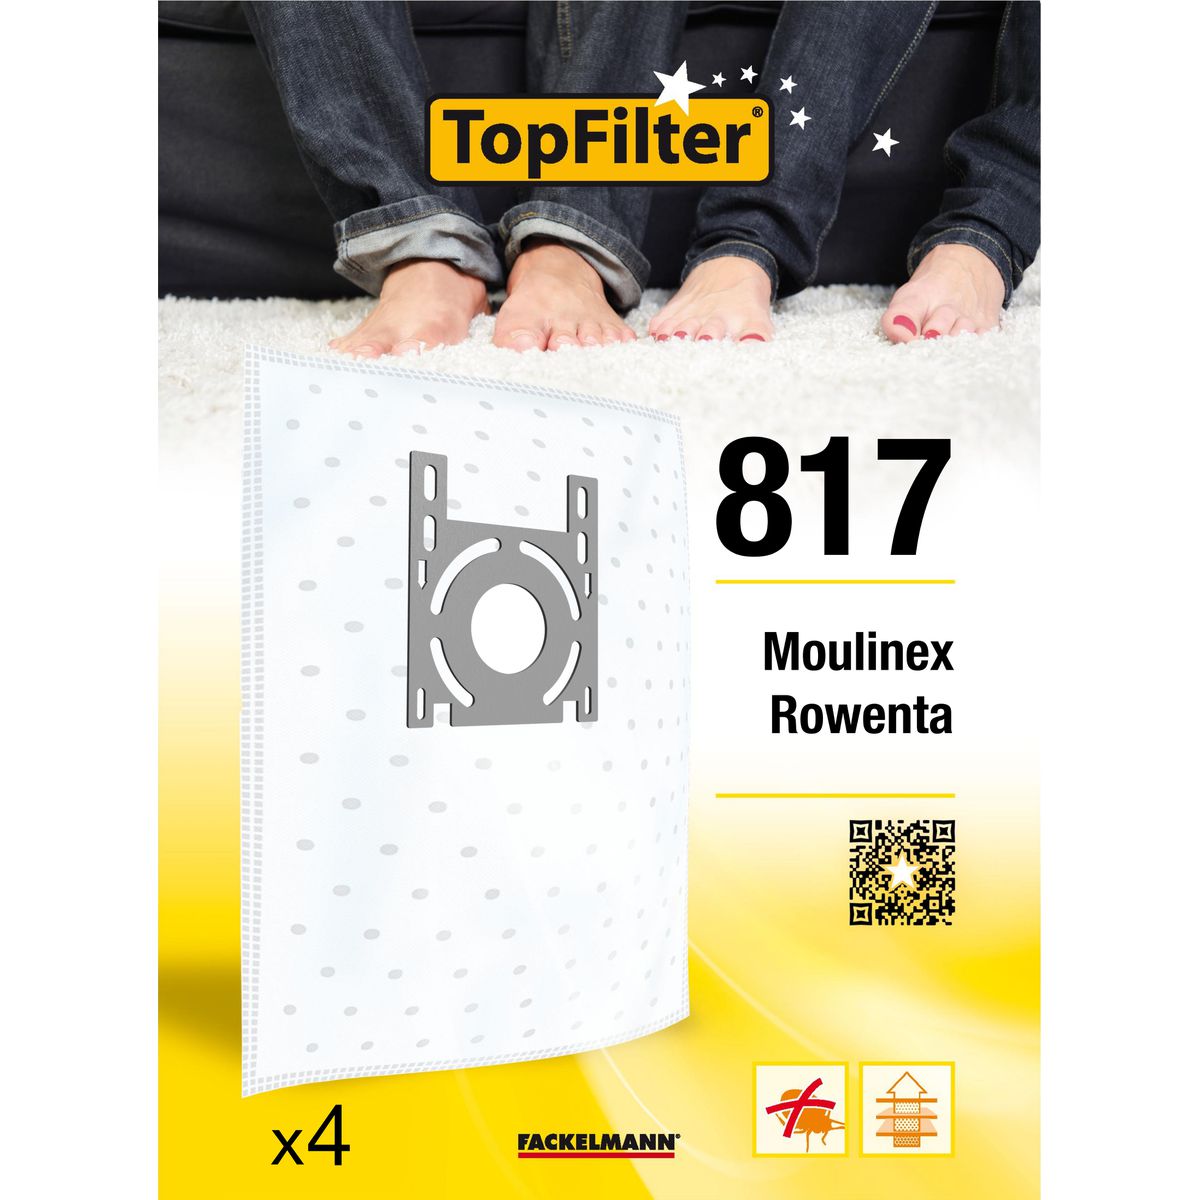 Lot de 4 sacs aspirateur Rowenta et Moulinex TopFilter Premium